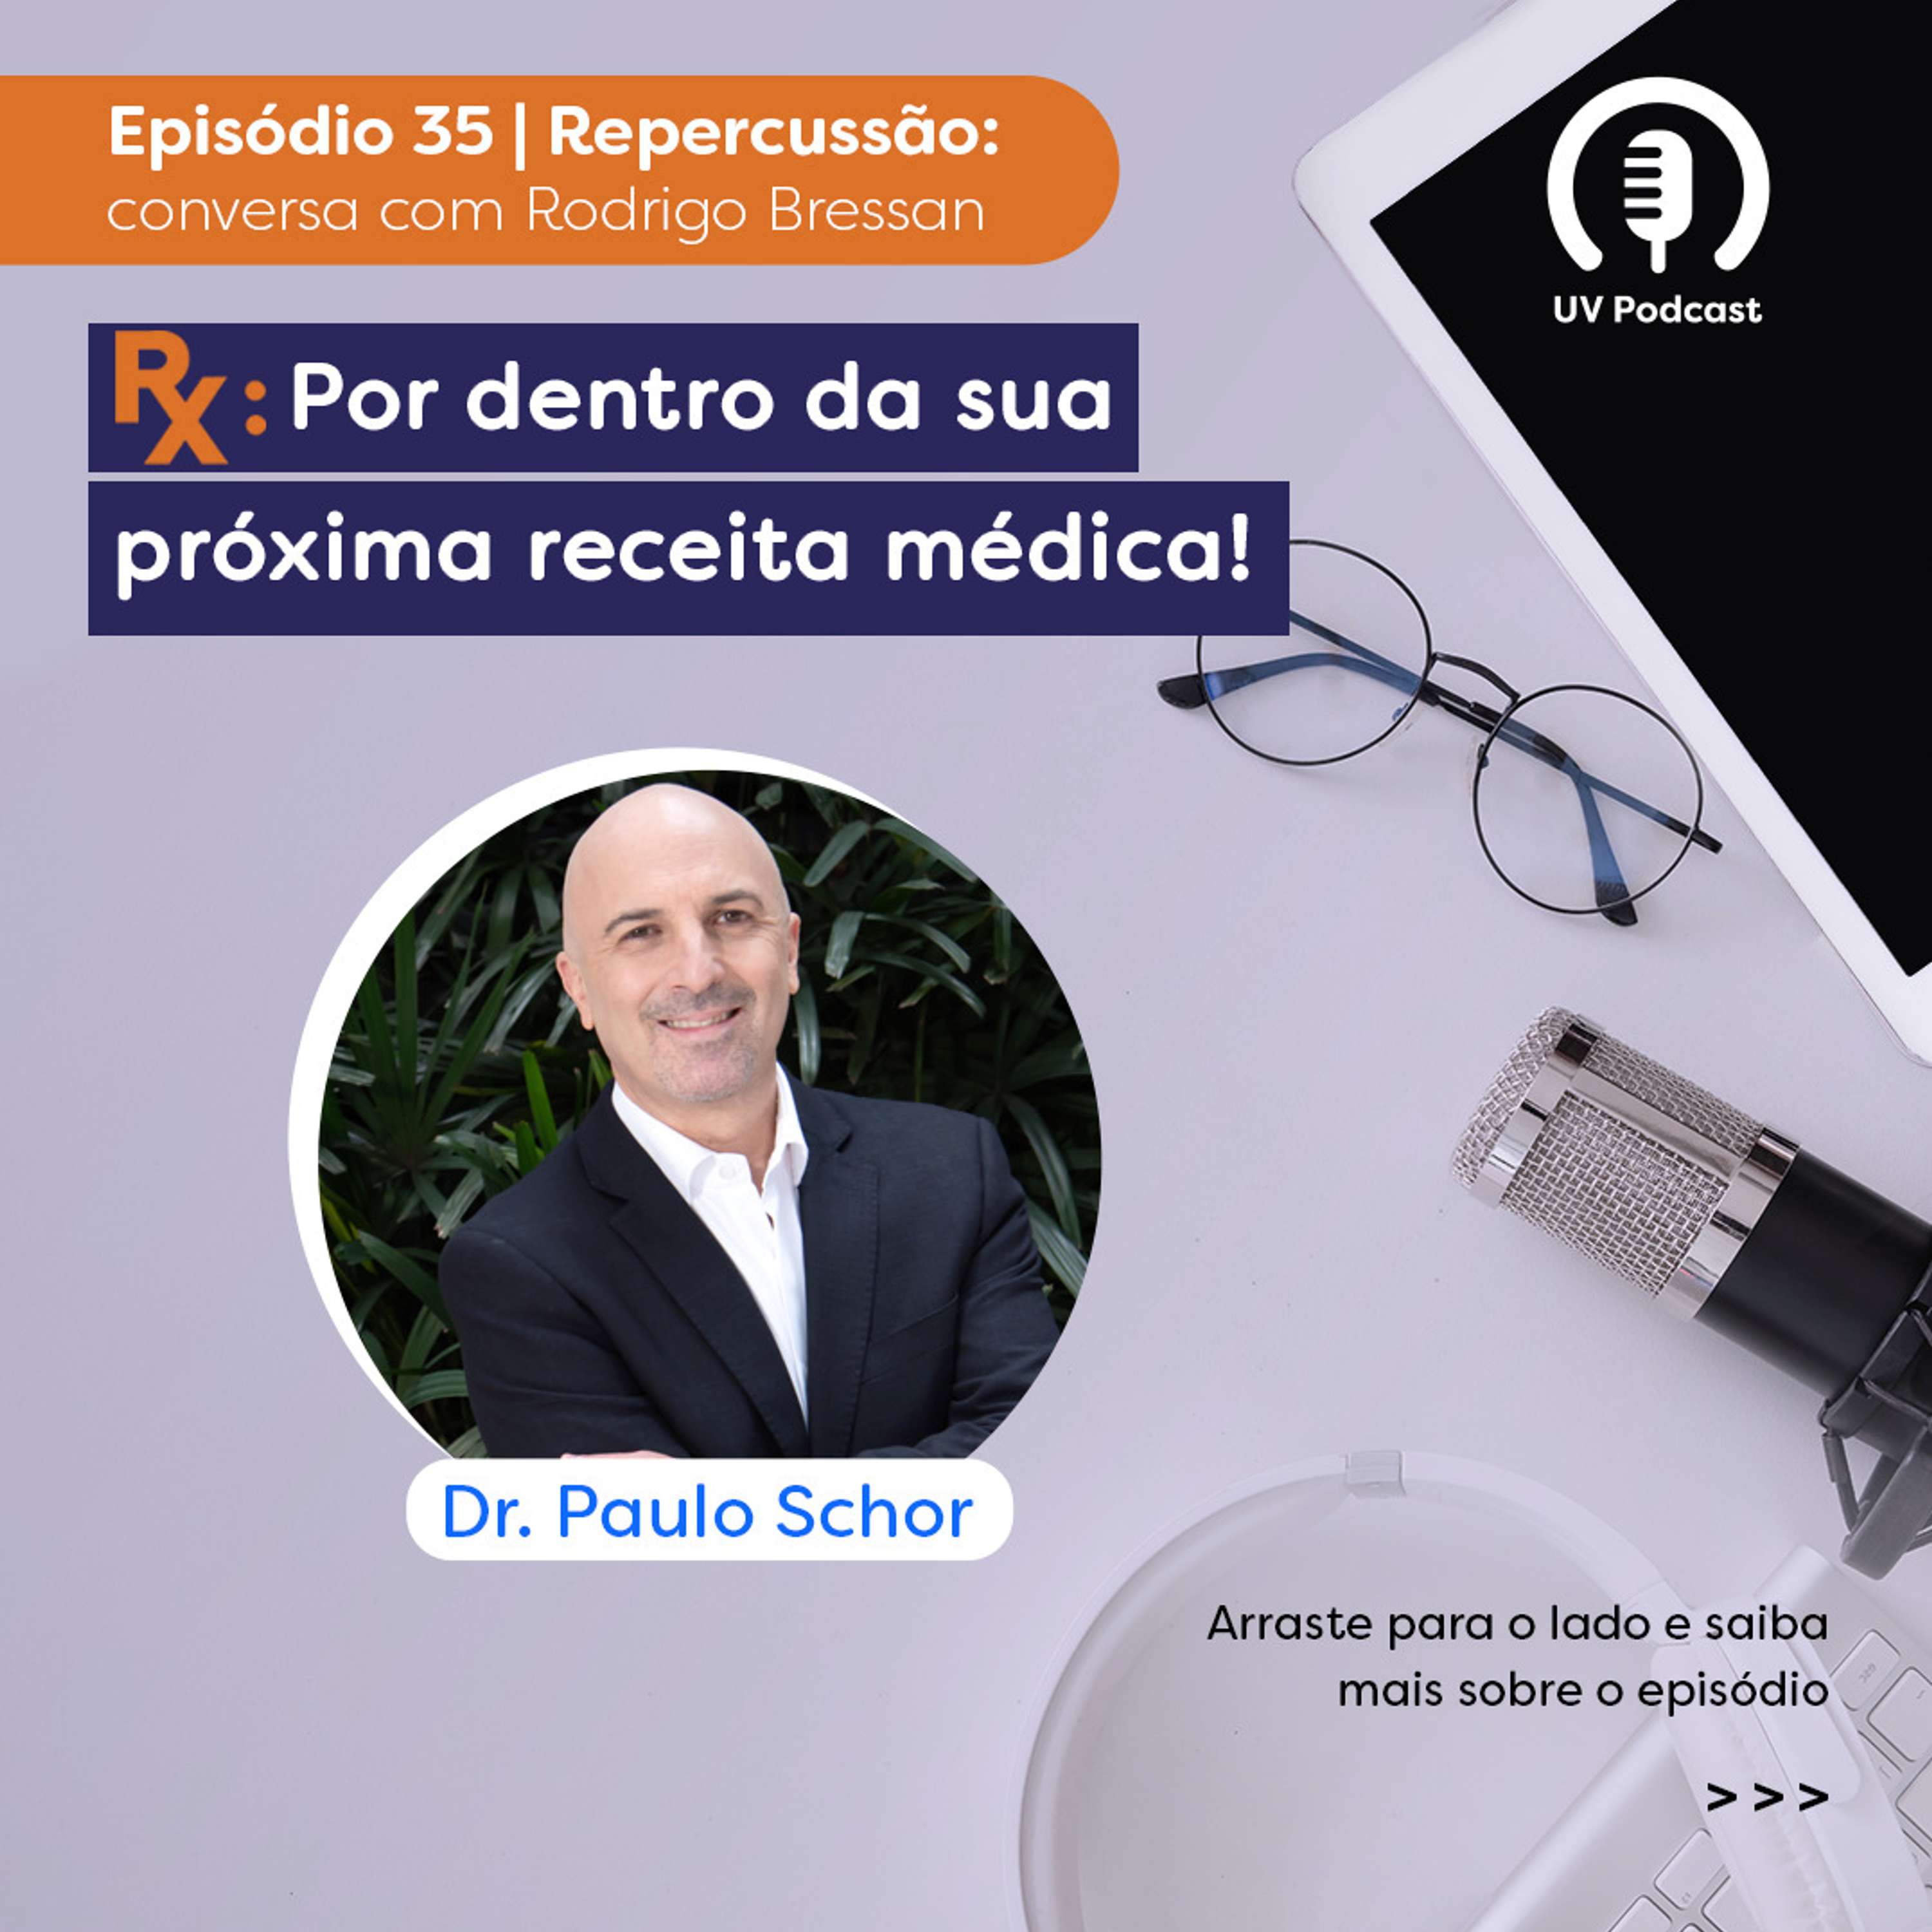 Paulo Schor | Programa Rx | Episódio 35 - Repercussão do papo com Rodrigo Bressan